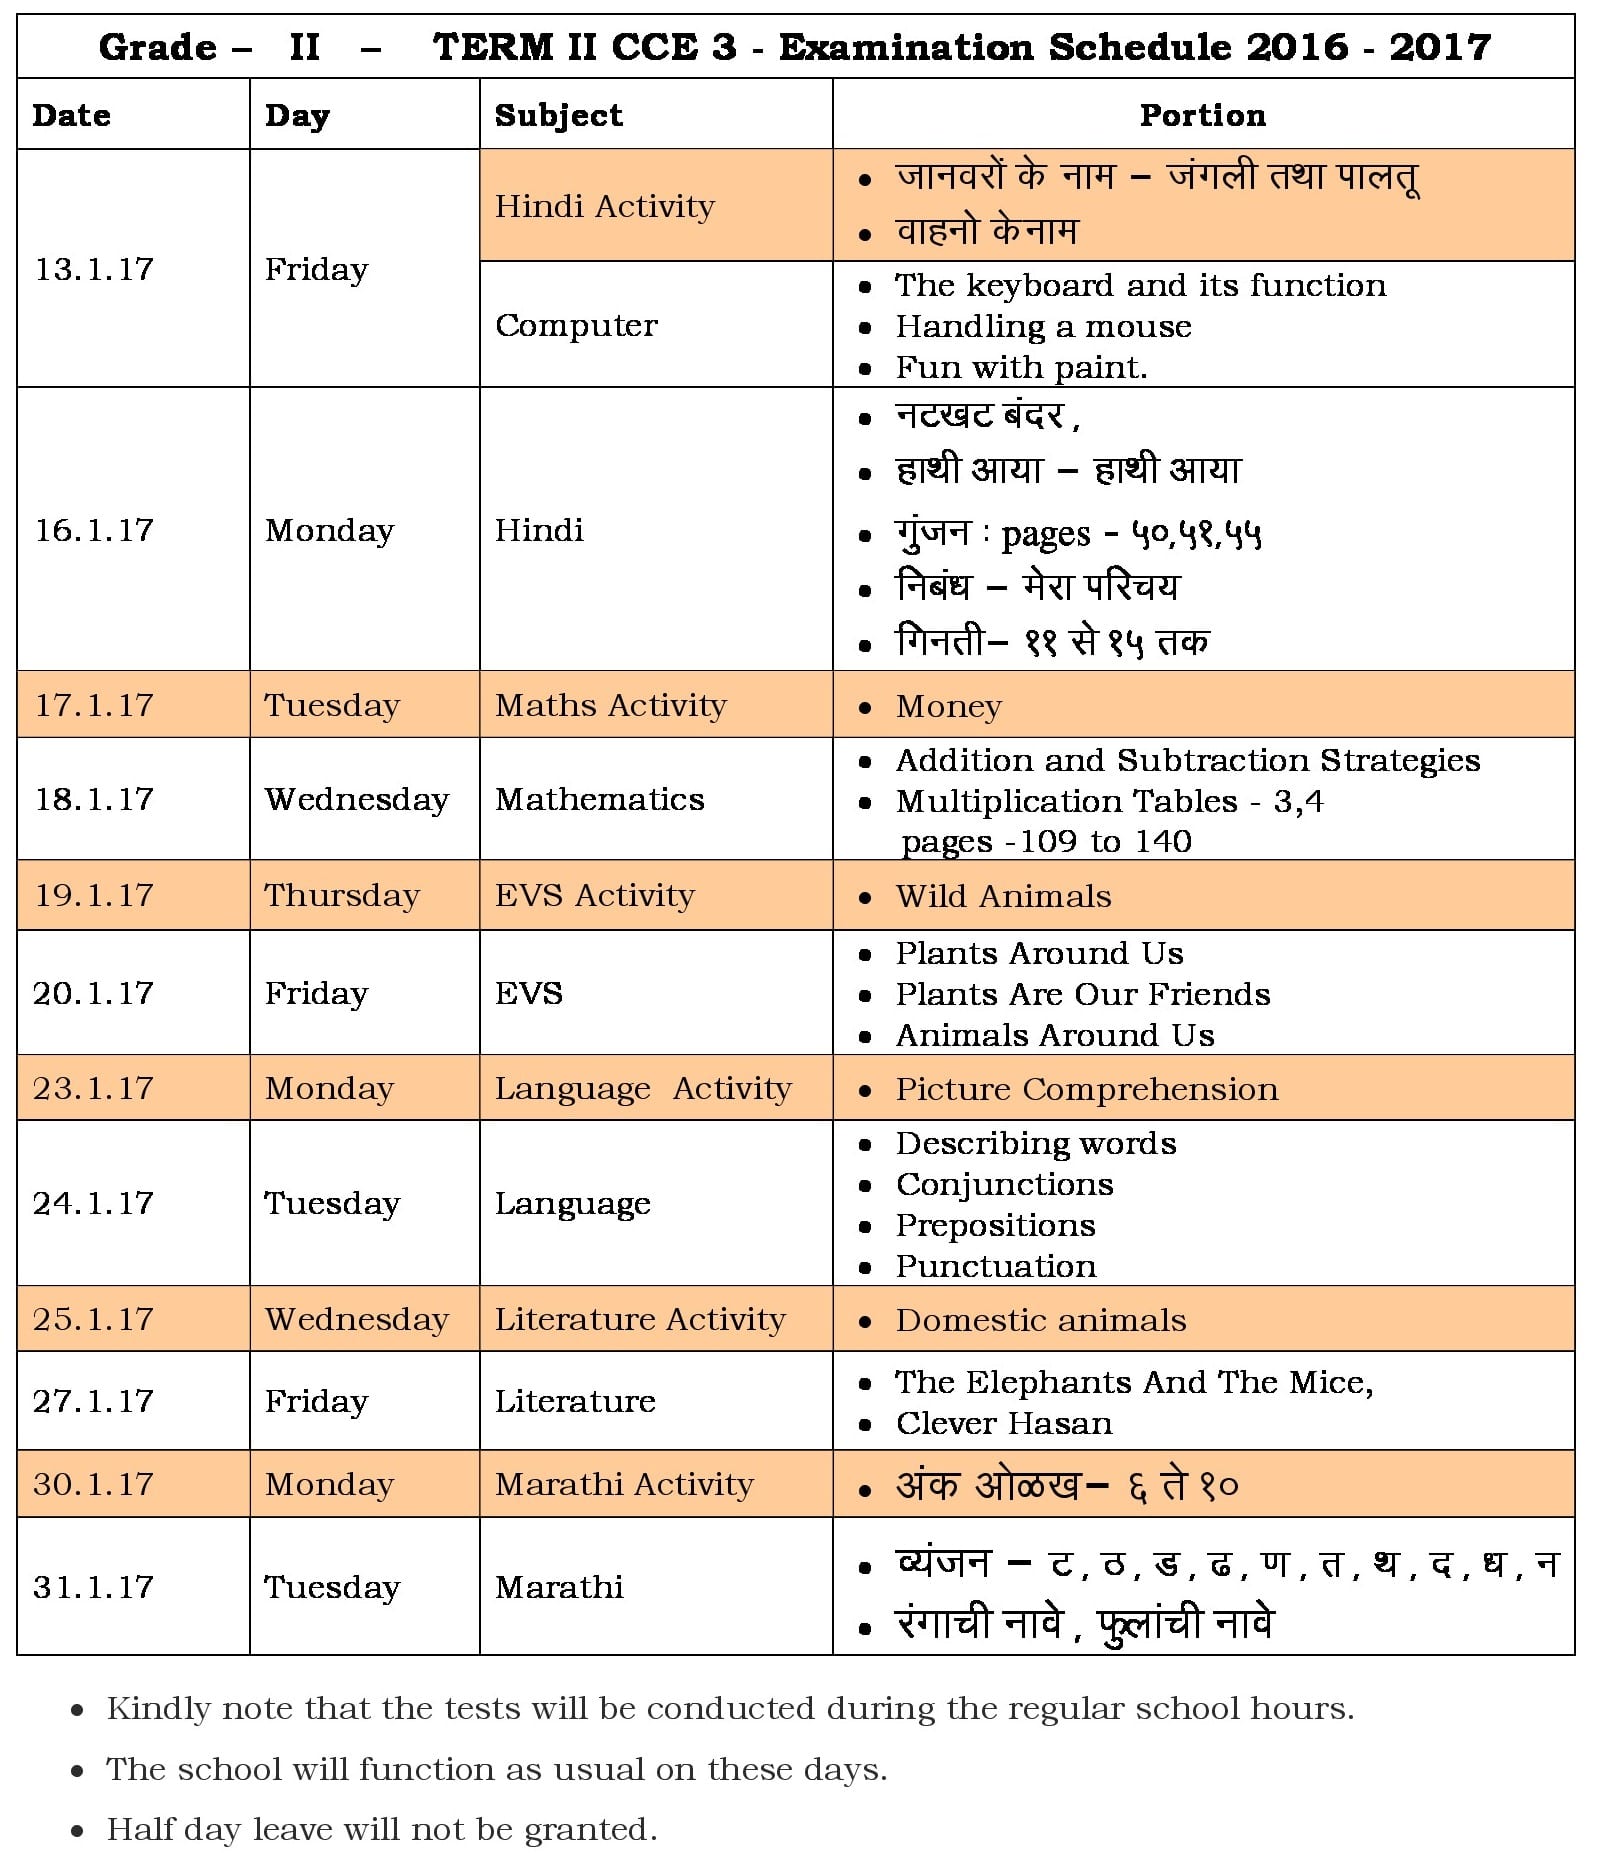 Term II CCE 3 Schedule